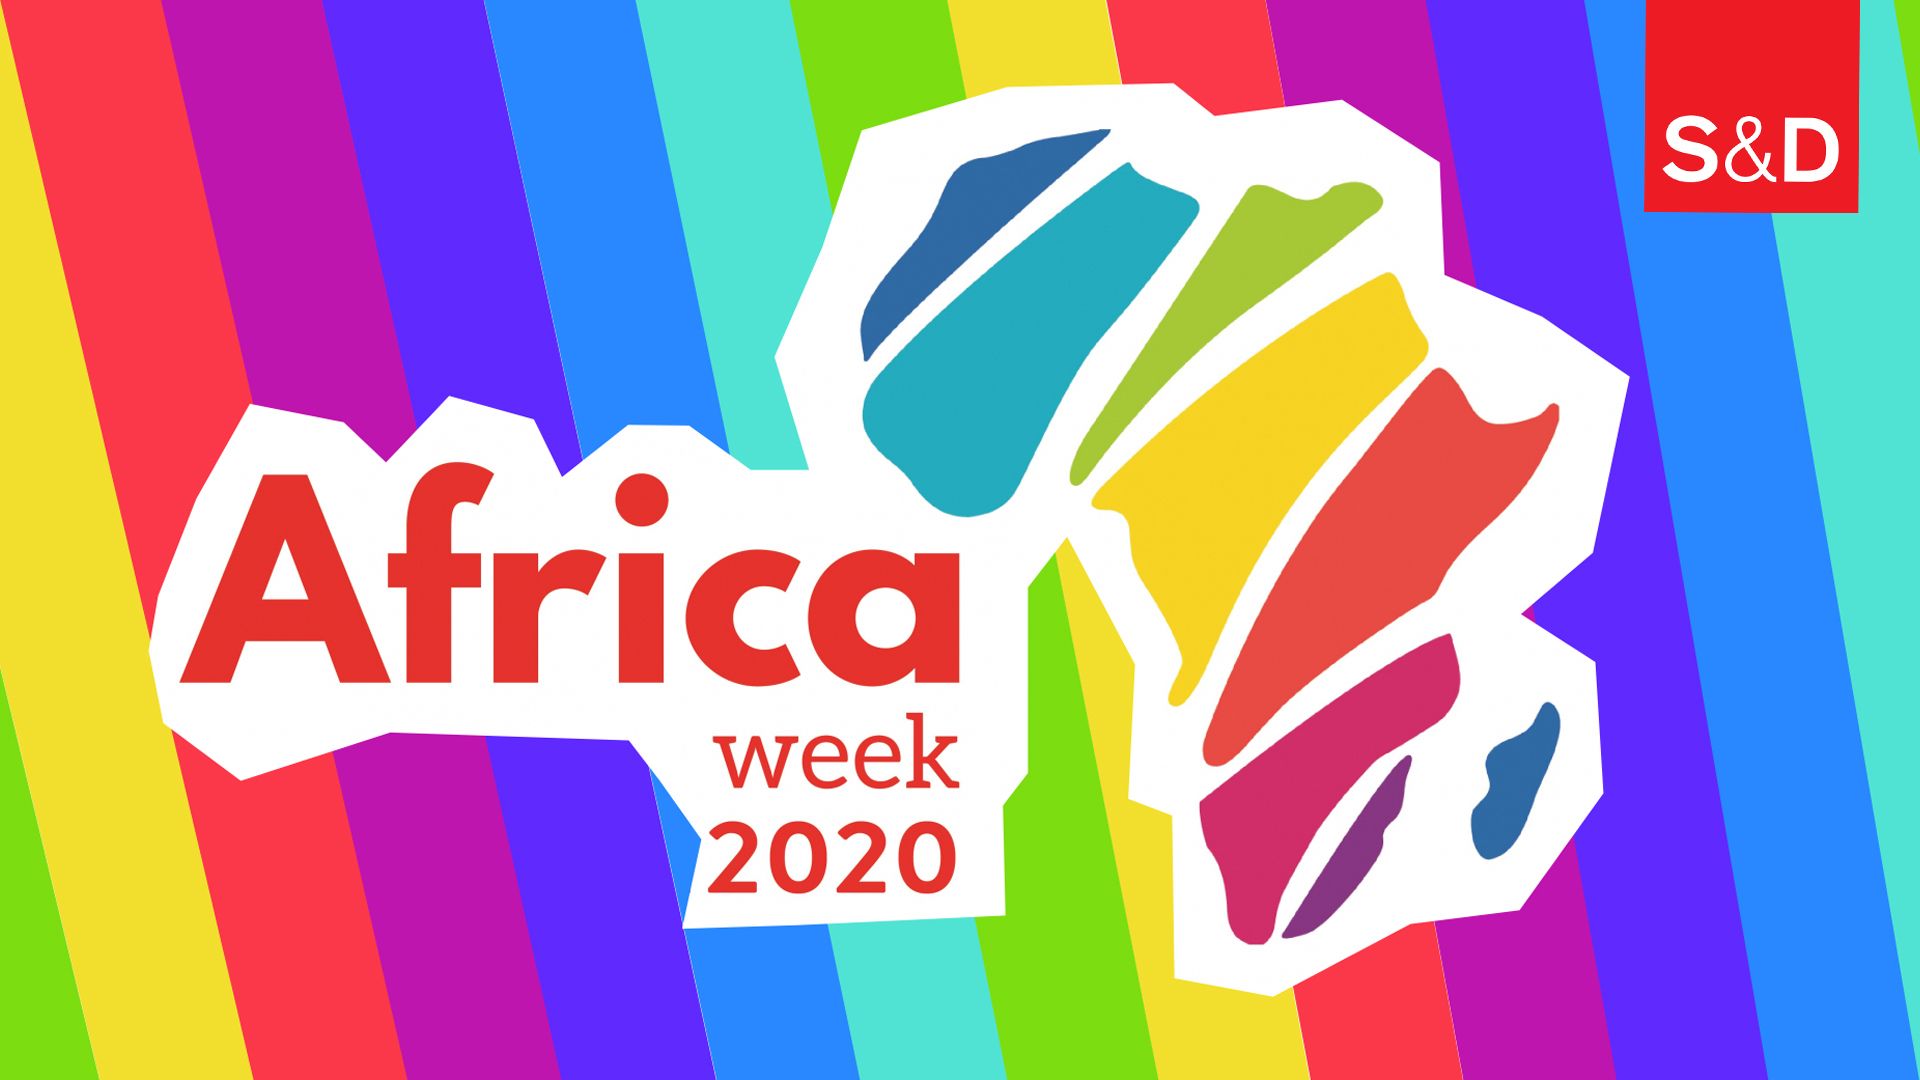 Africa Week 2020